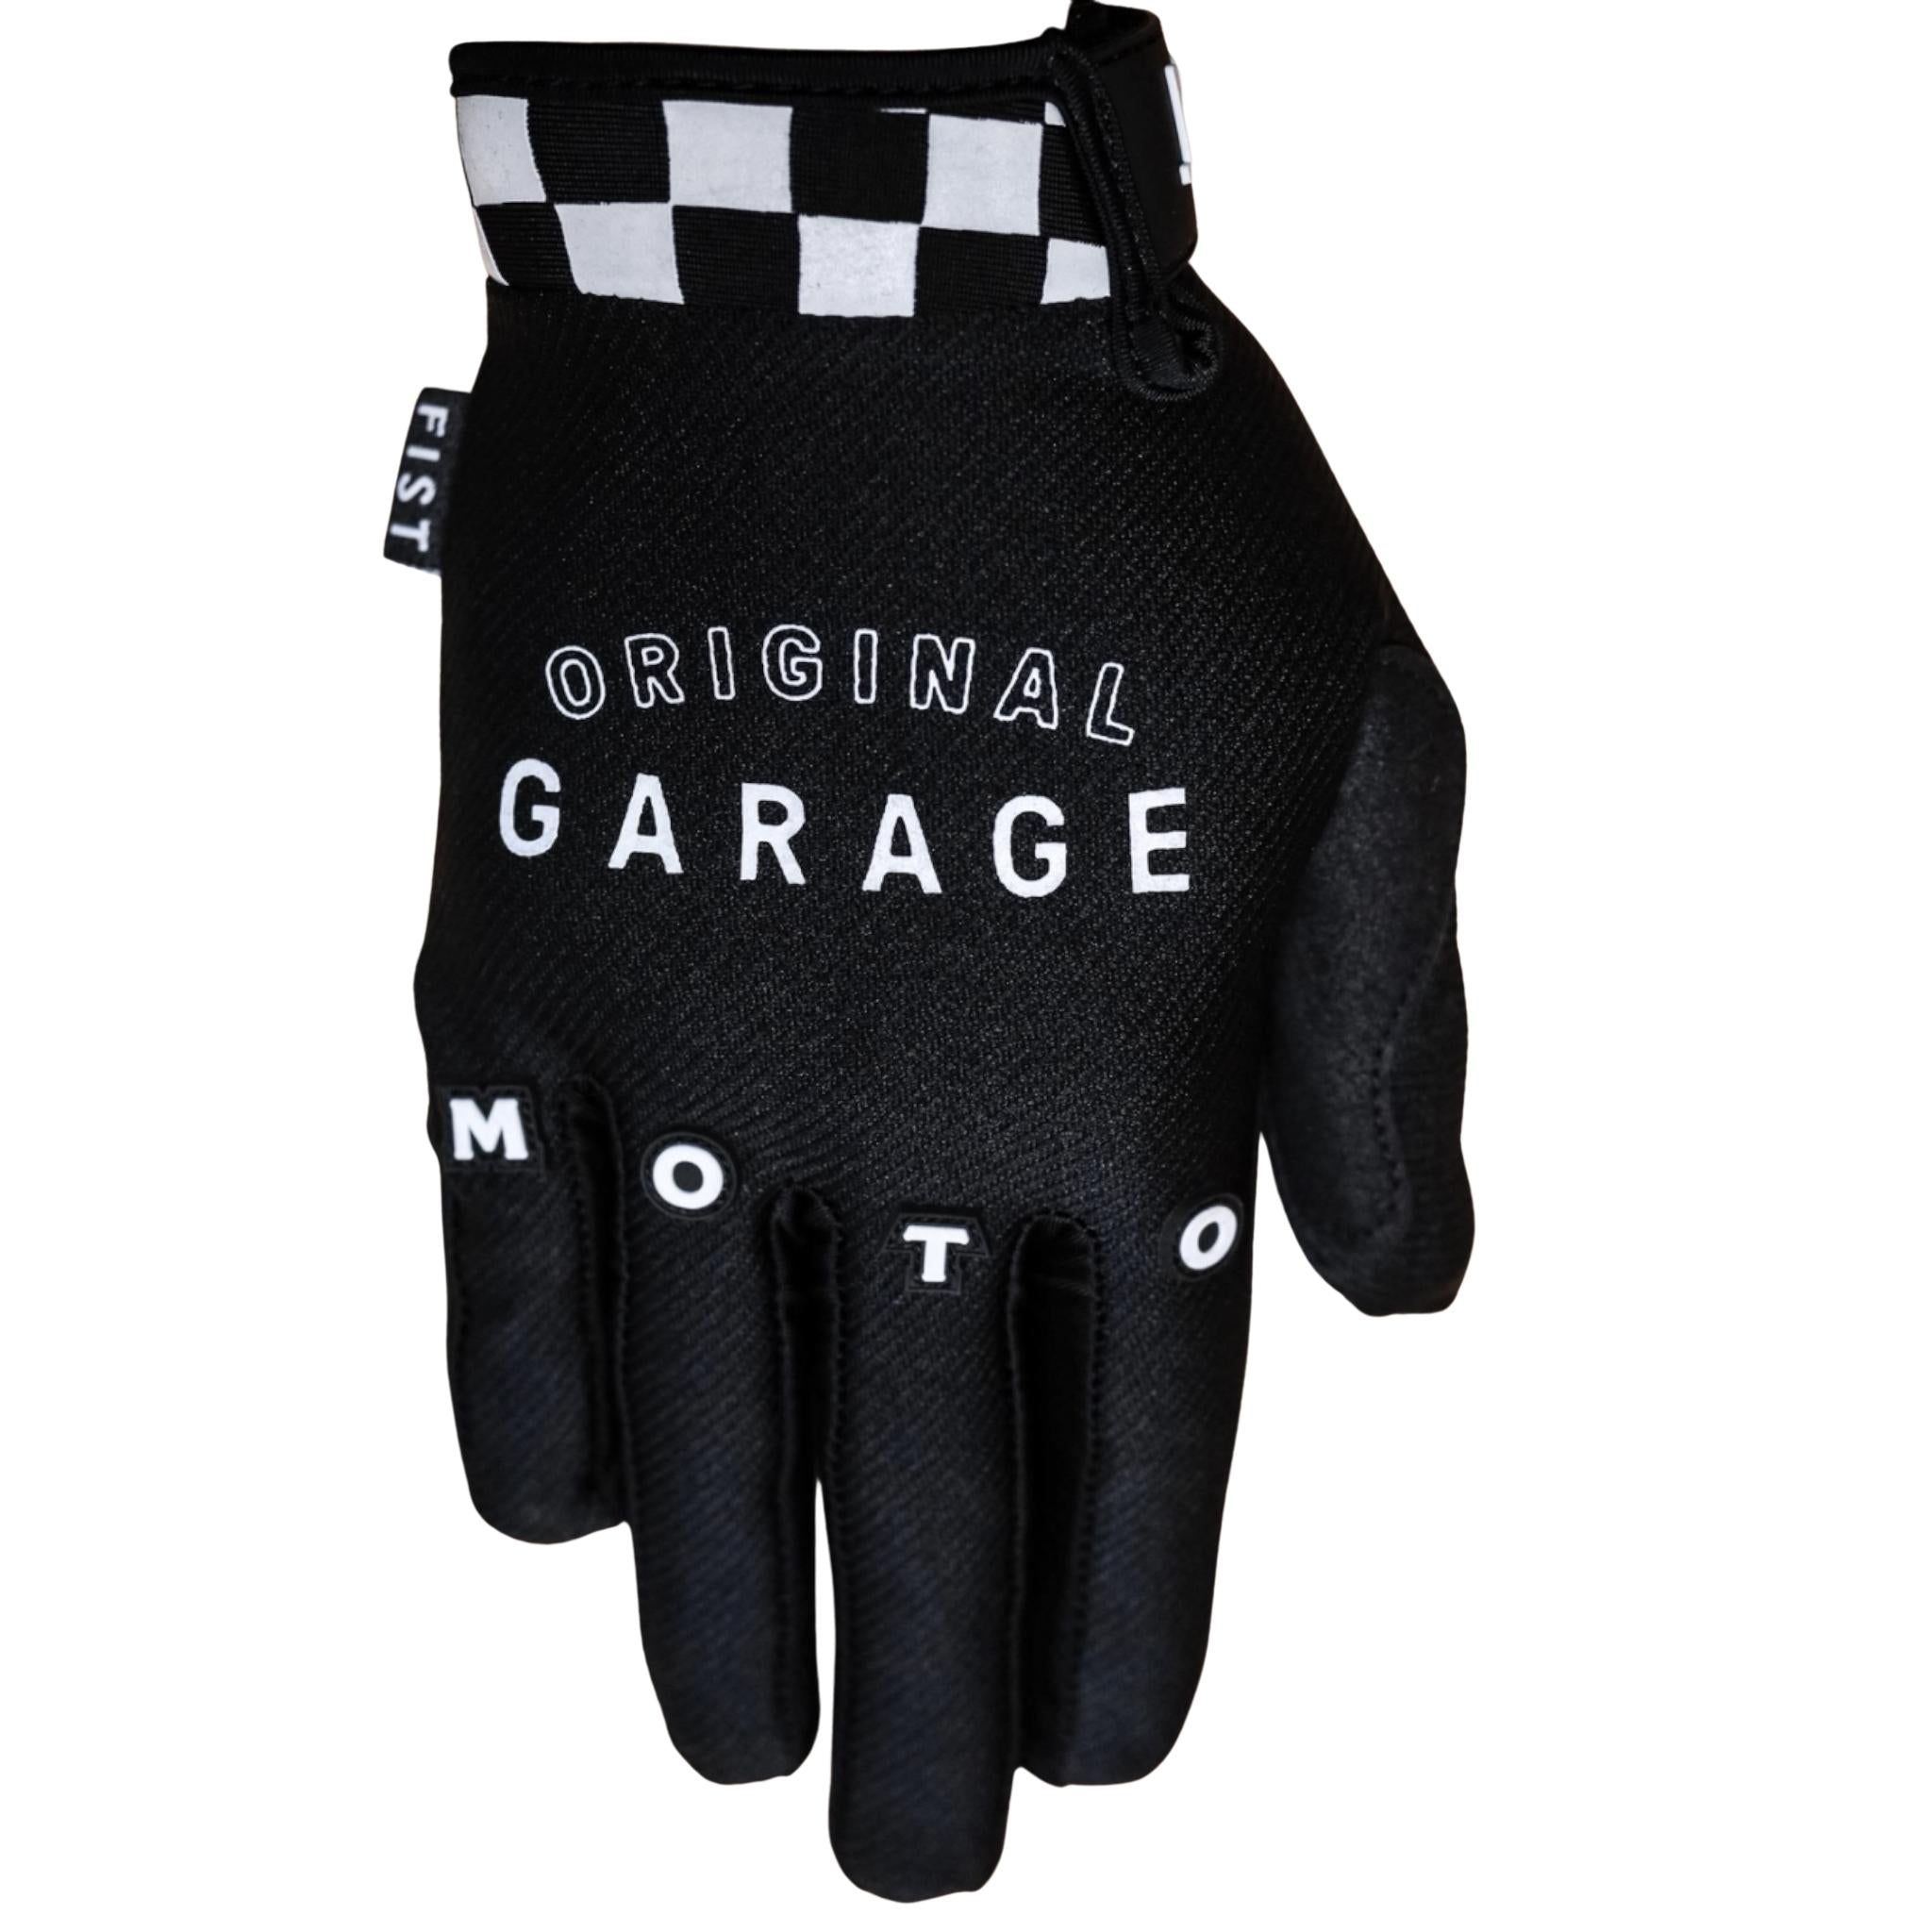 Moto gloves